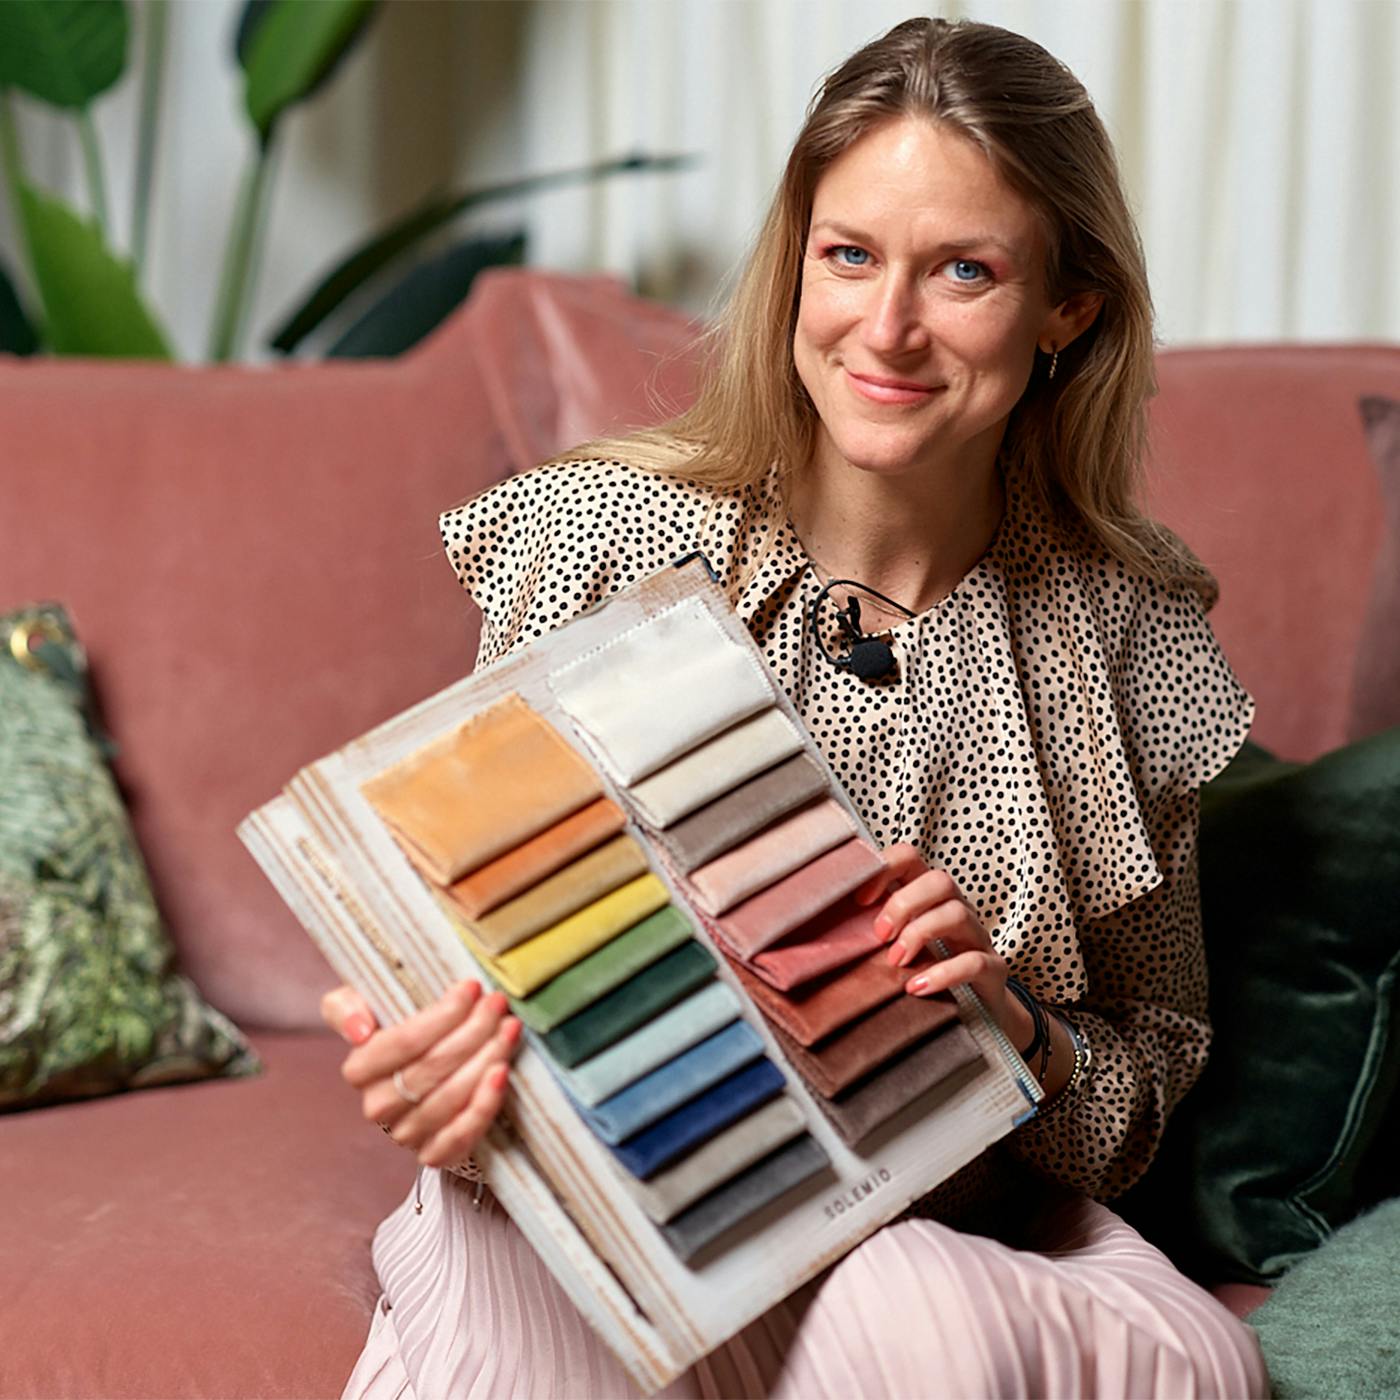 En professionell färgforskare, Sara Garanty, sitter bekvämt i en modern rosa soffa och presenterar en tygkarta med ett urval av färger för anpassningsbara soffklädsel på Sweef. Hennes klädsel och smycken är elegant samordnade med de mjuka tonerna i rummet, som illustrerar konceptet av färgpsykologi i heminredning. Denna bild tjänar som en visuell hjälp för att betona hur valet av soffans färg kan påverka en persons känslor och atmosfären i ett rum.